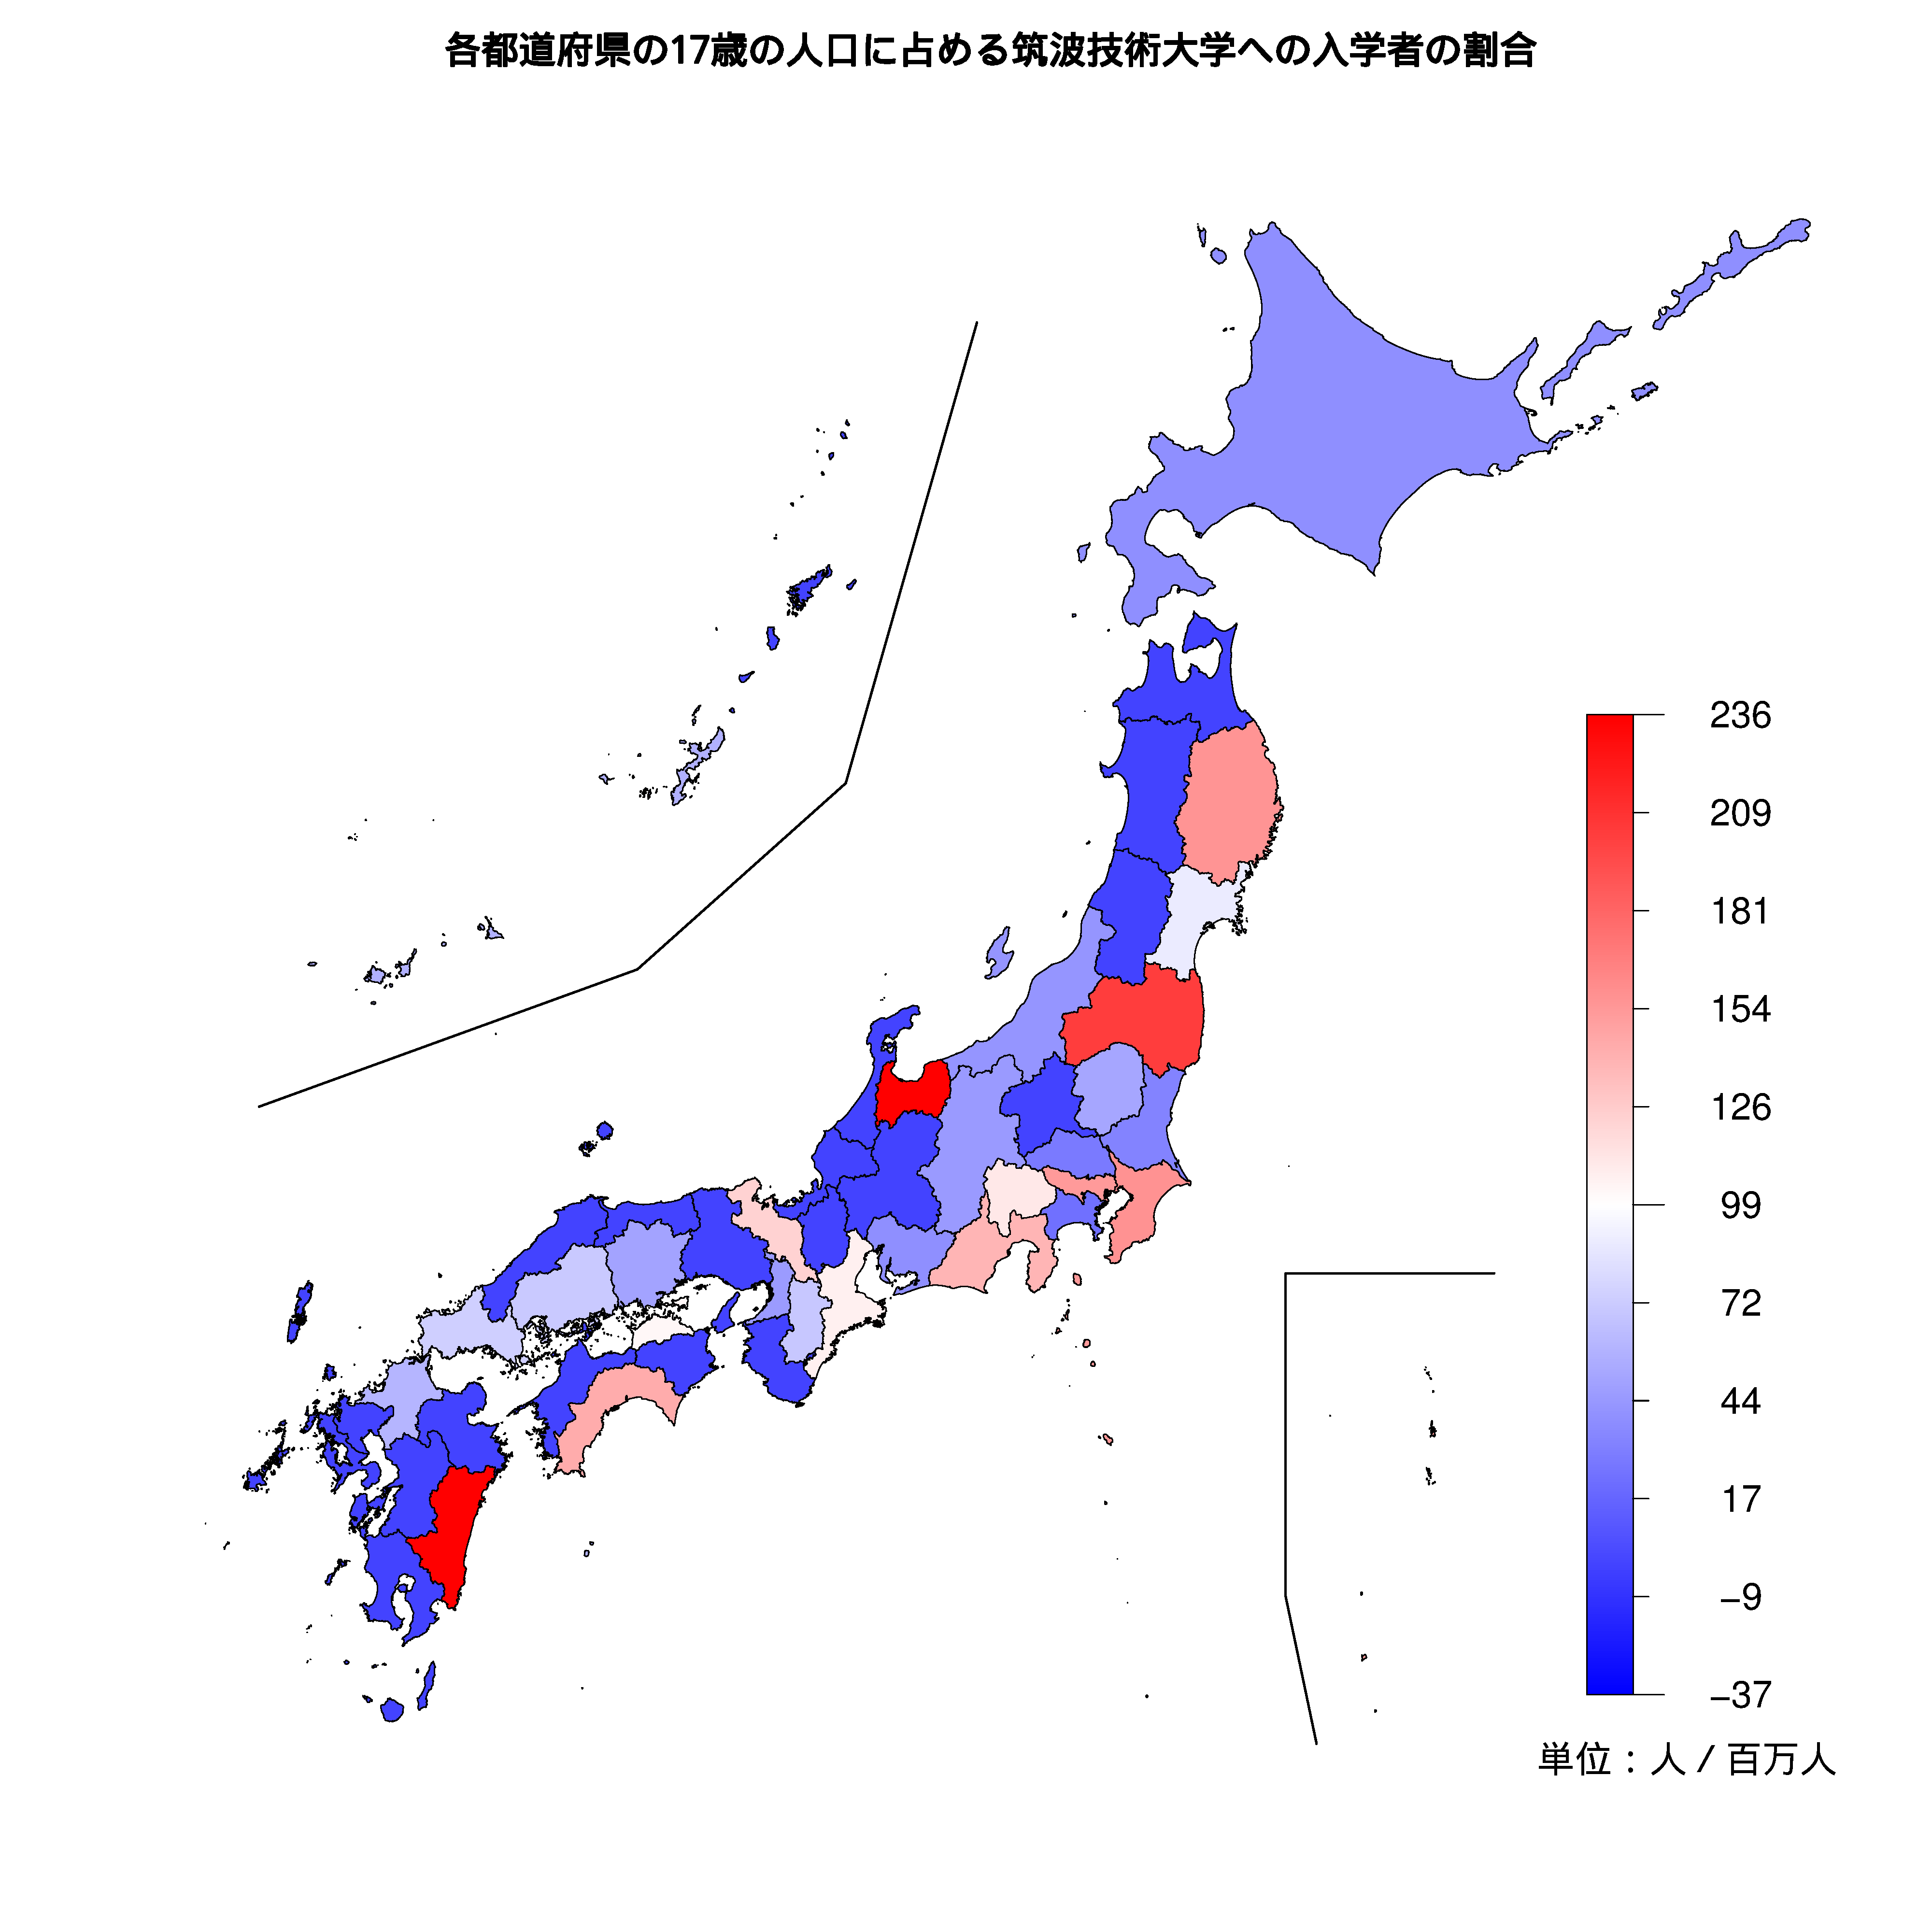 筑波技術大学への入学者が多い都道府県の色分け地図